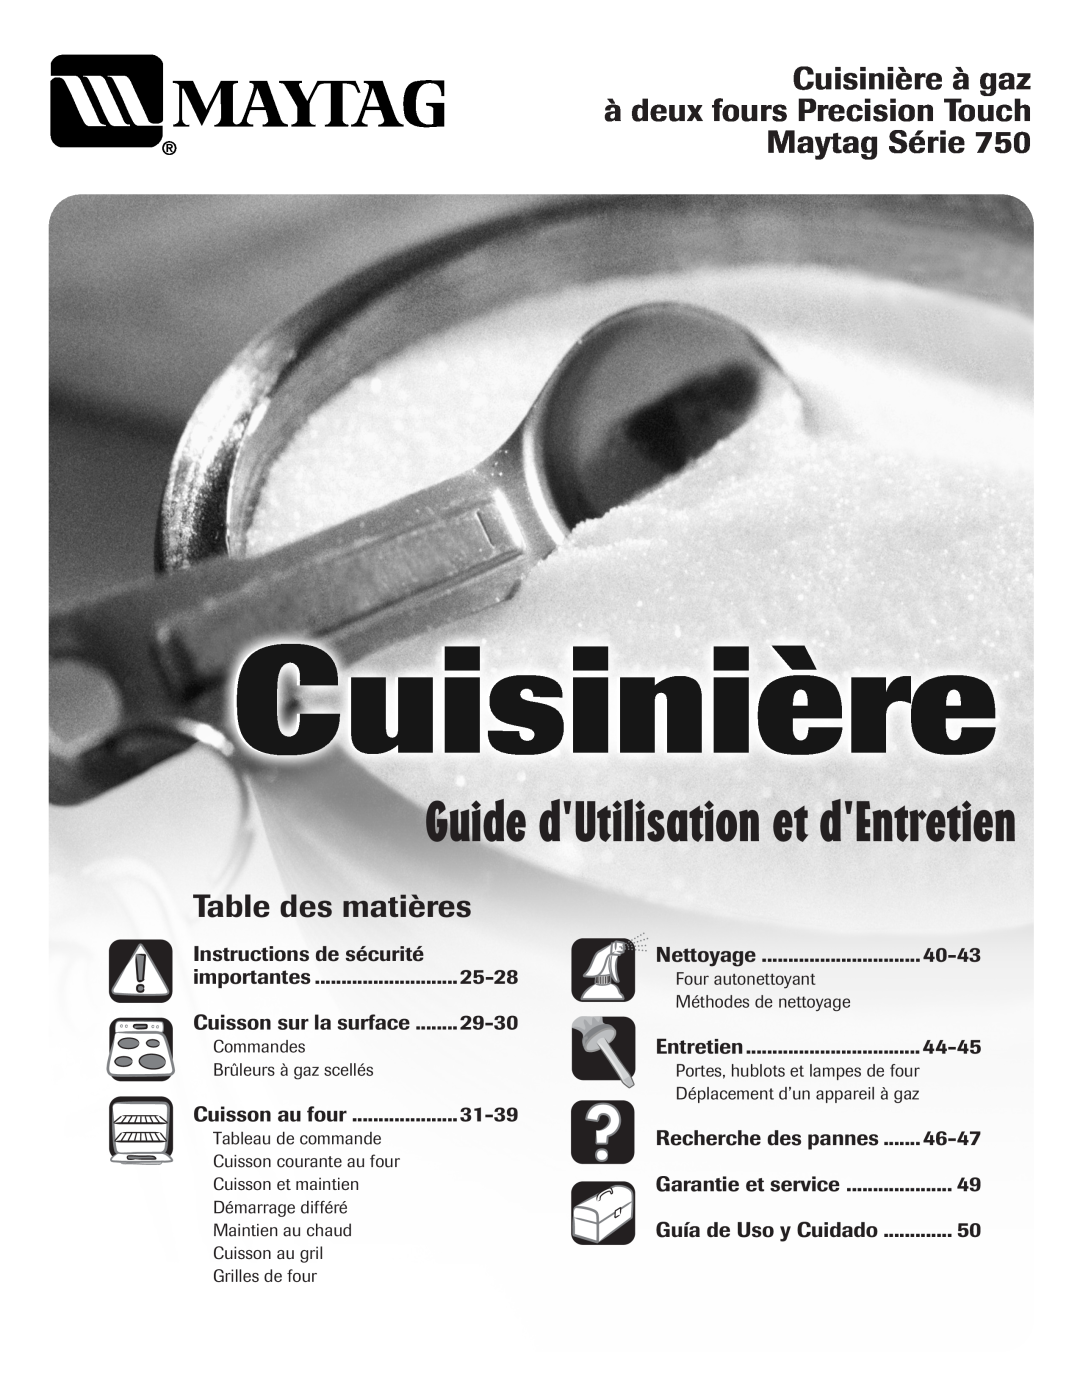 Maytag MGR6751BDW manual Guide dUtilisation et dEntretien, Cuisinière à gaz, à deux fours Precision Touch, Maytag Série 